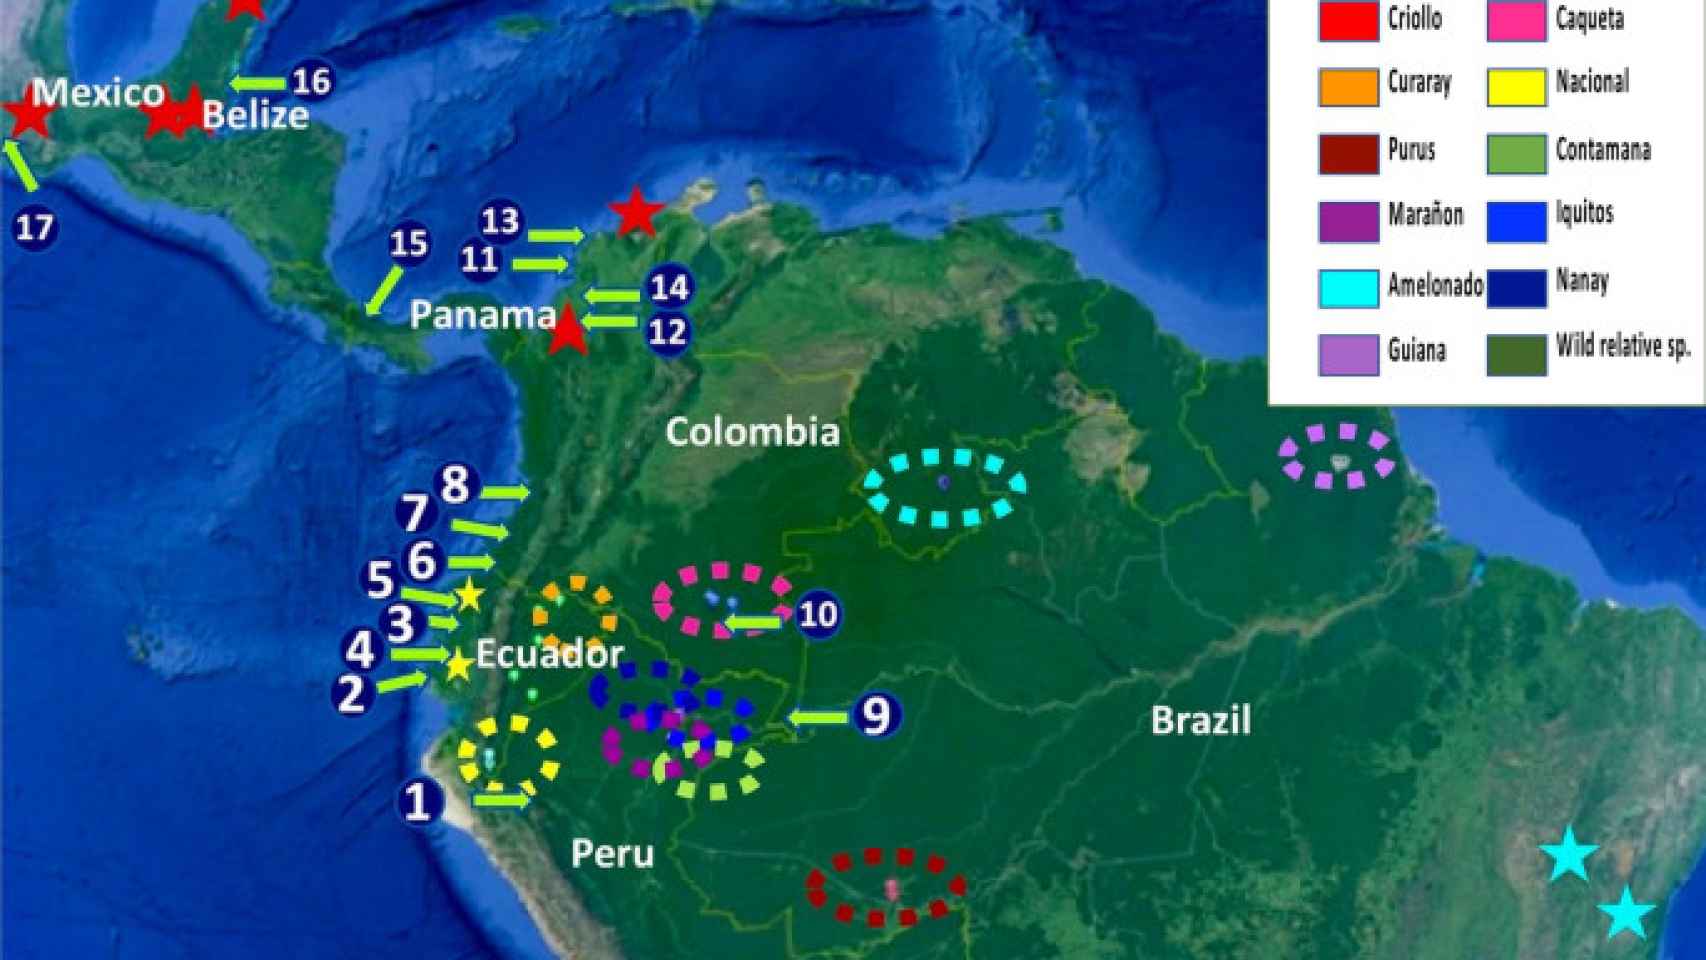 Mapa que señala las distintas cepas de cacao y las culturas cerámicas analizadas